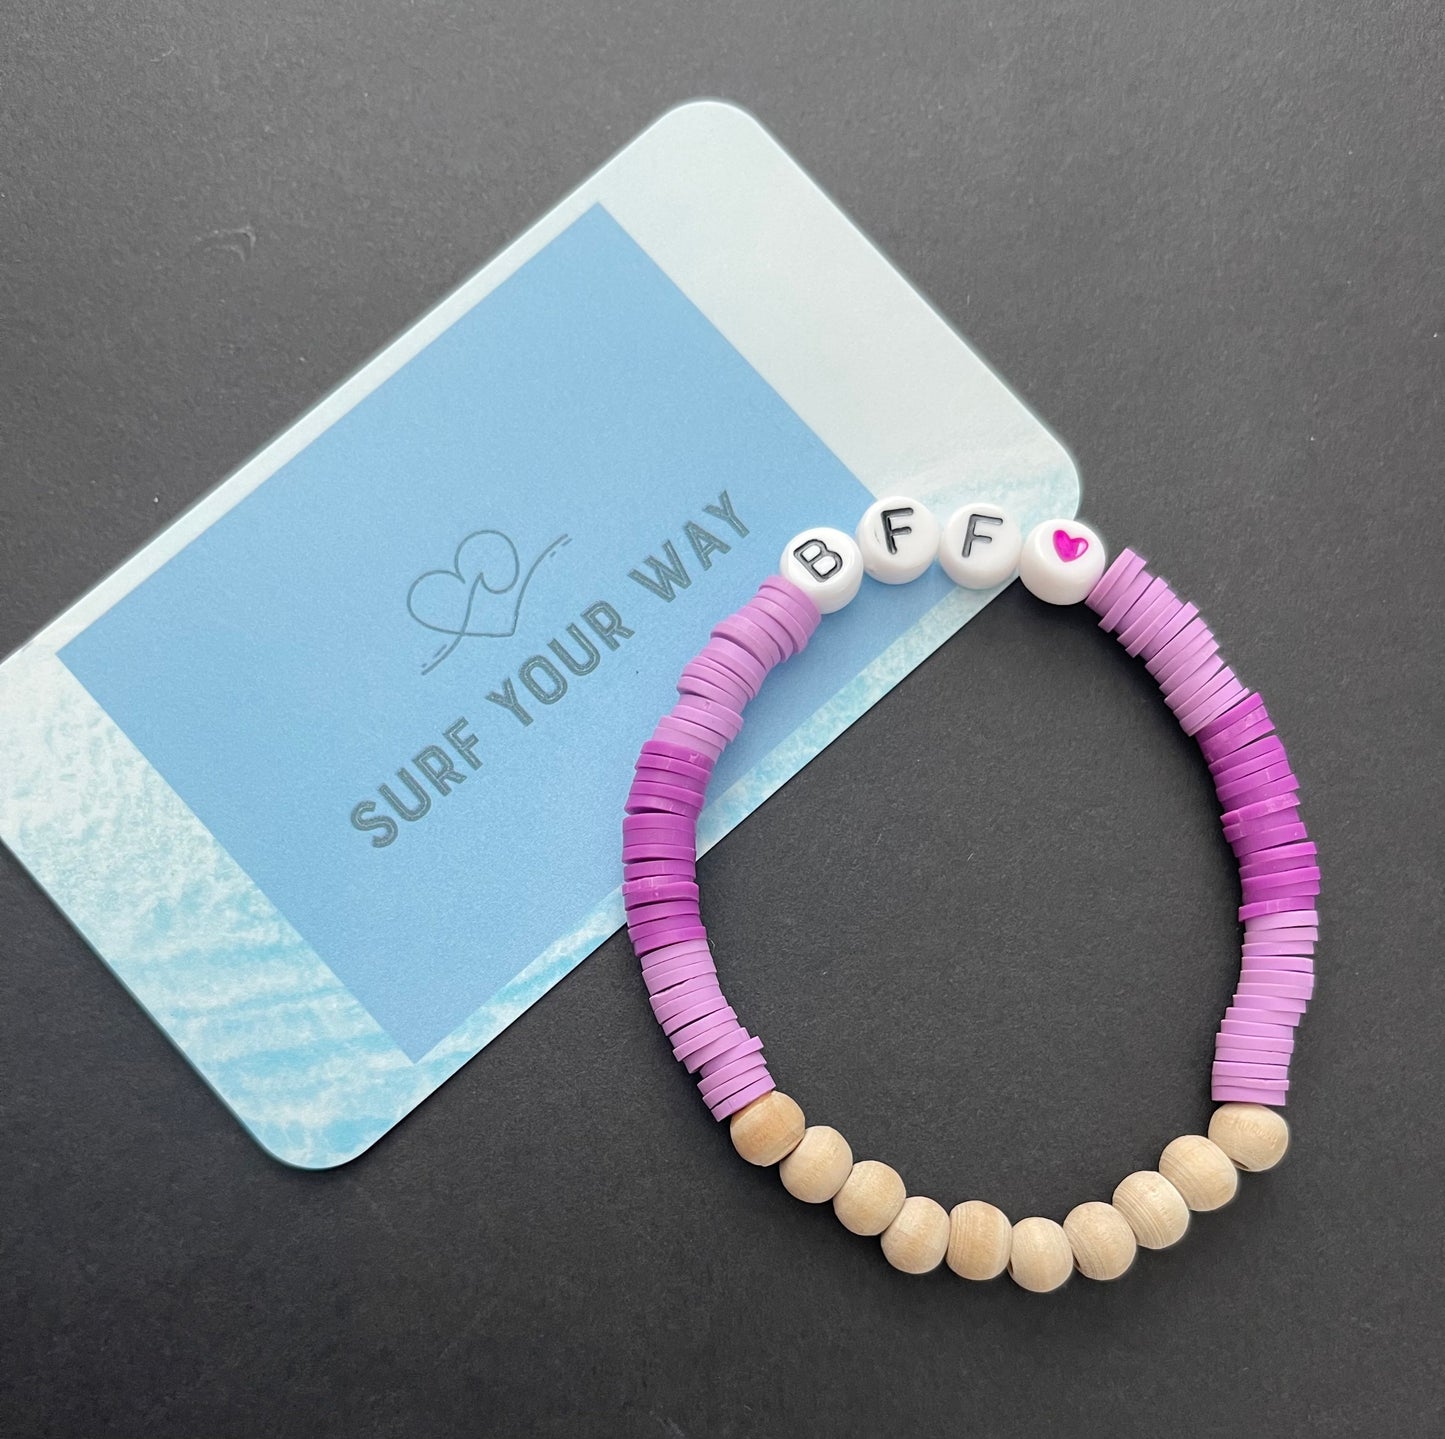 The BFF Bracelet